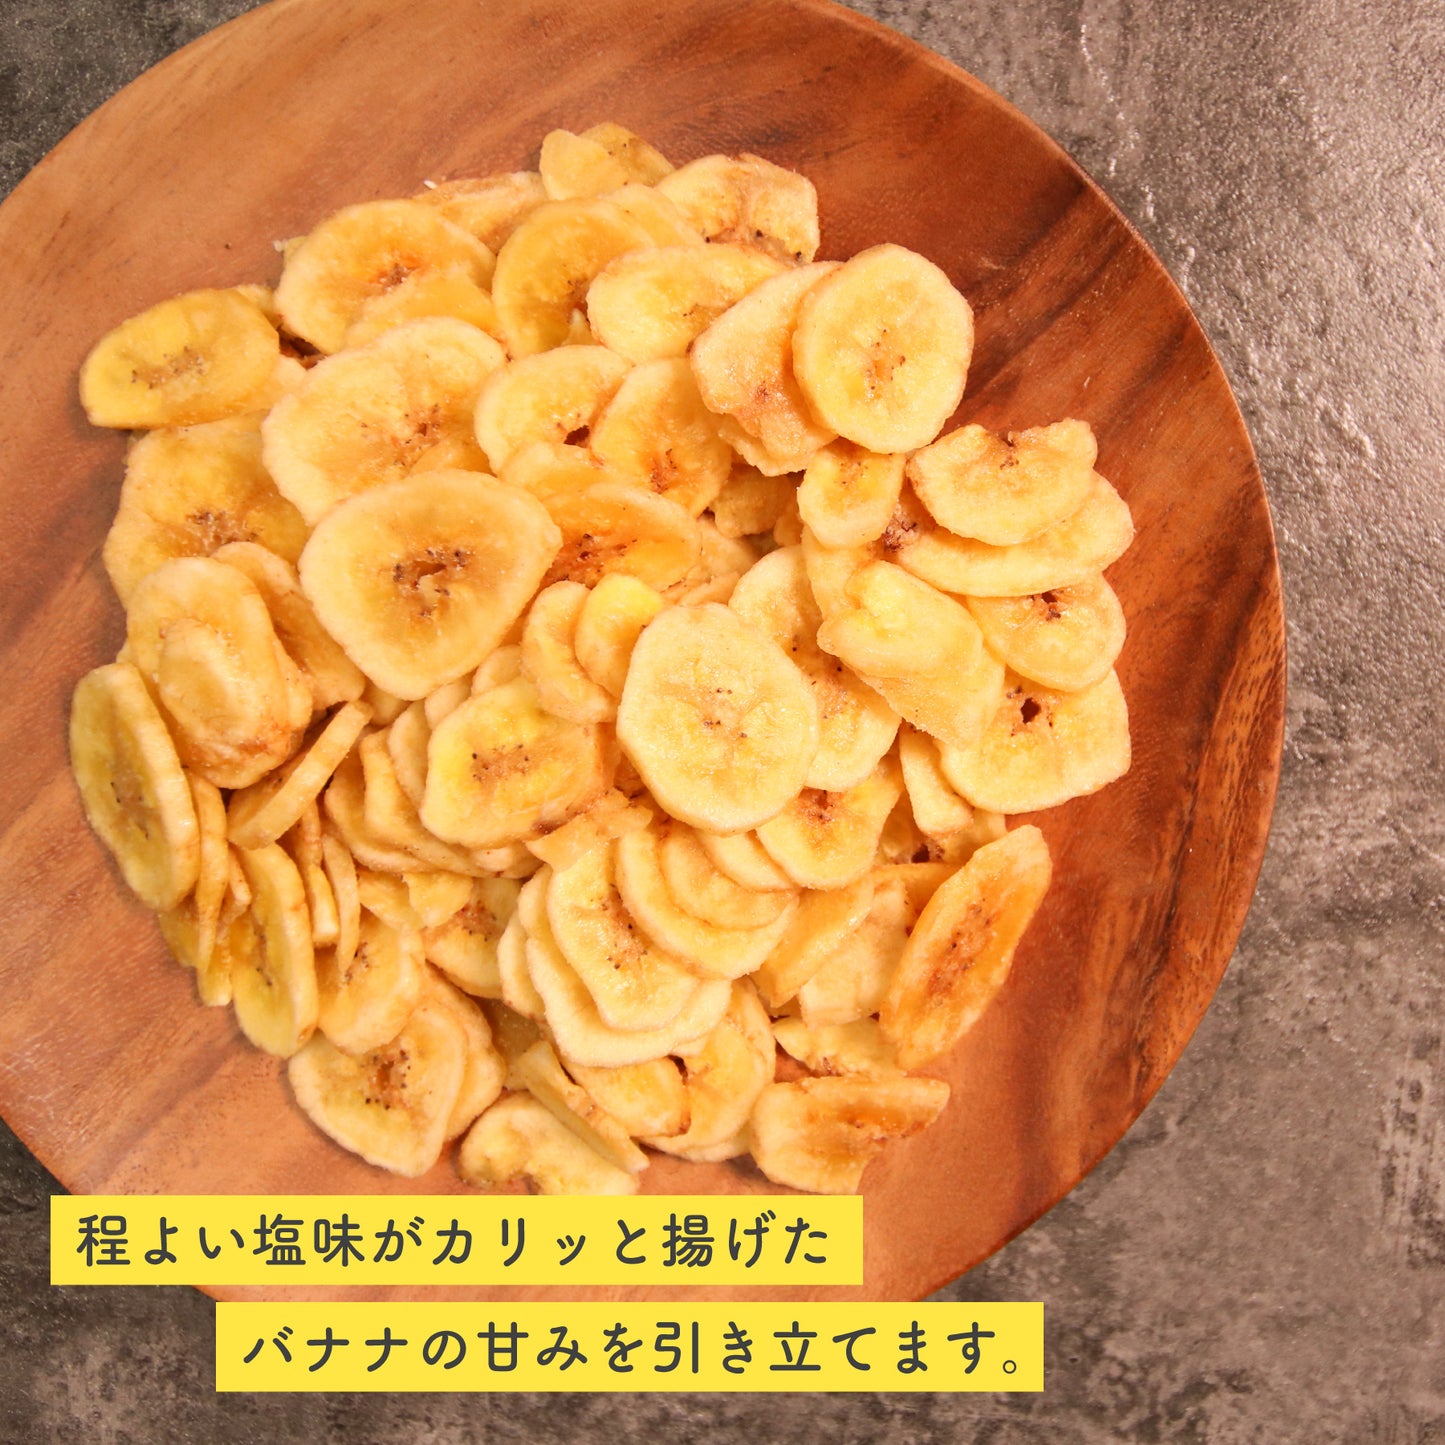 塩バナナチップス 140gx10 鹿児島錦江湾の塩 ココナッツオイル使用